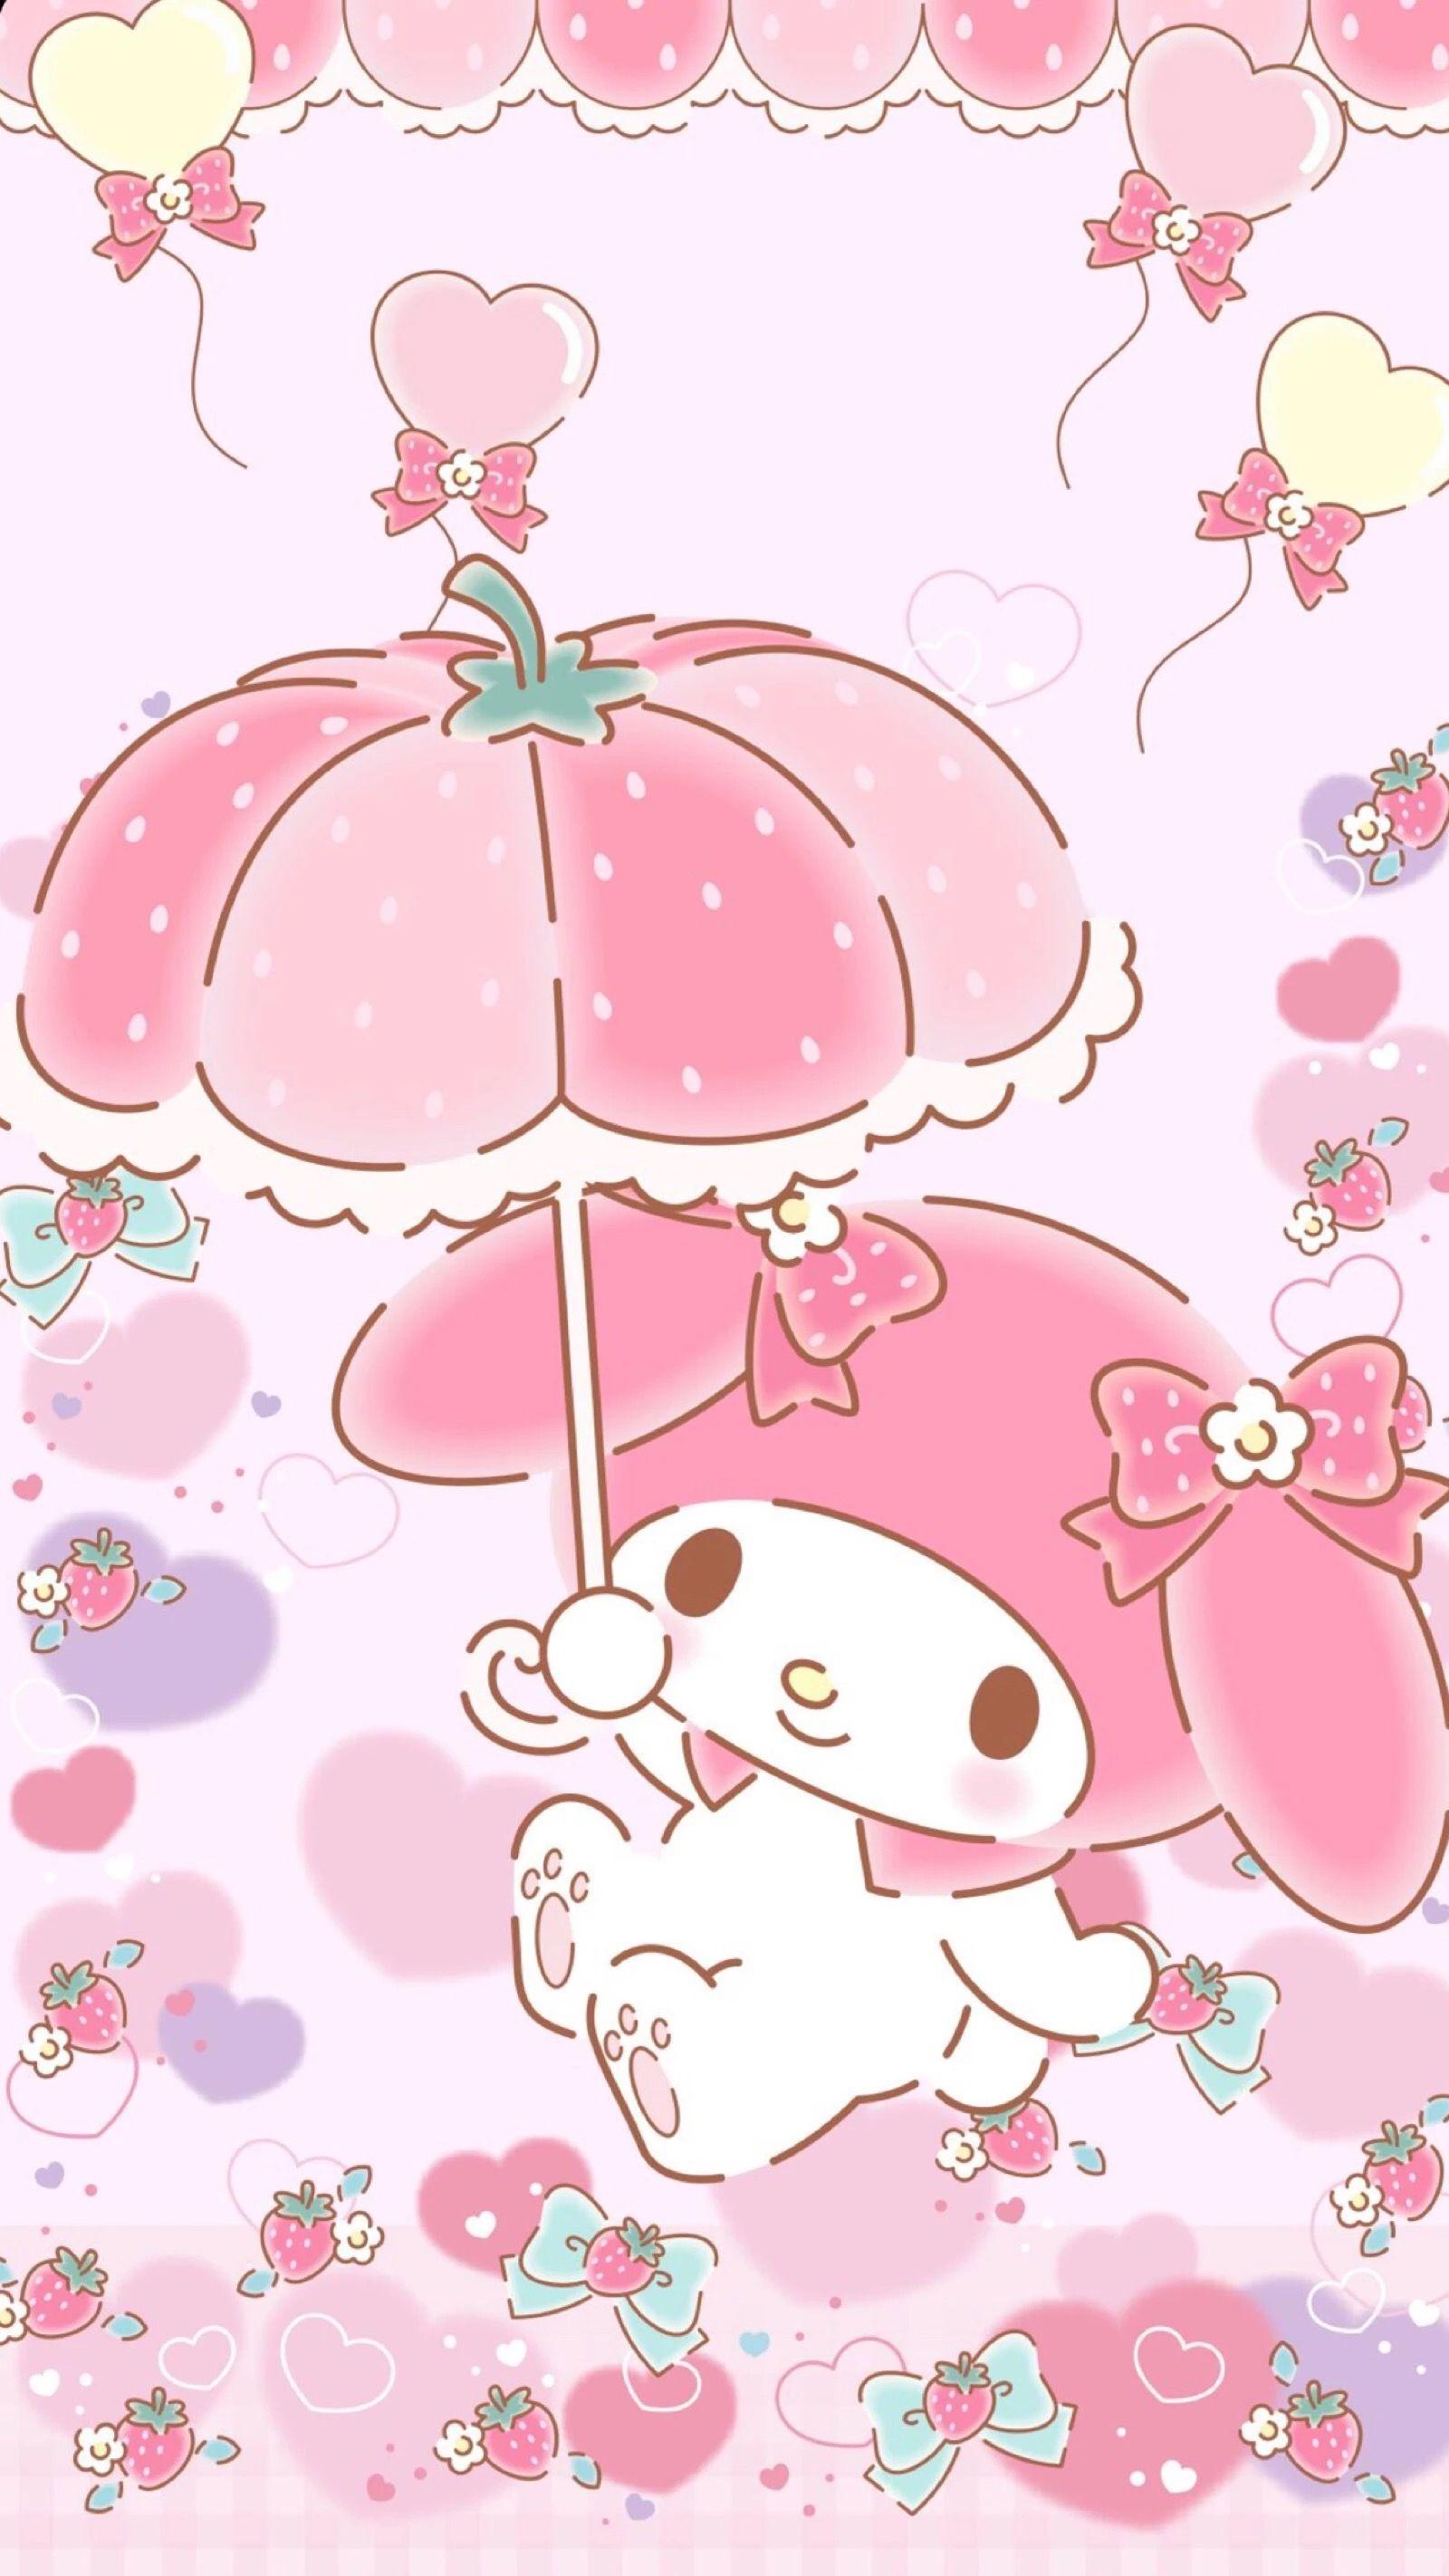 1600 x 2844 · jpeg - Pink Wallpaper Cute Kawaii - 1600x2844 Wallpaper - teahub.io